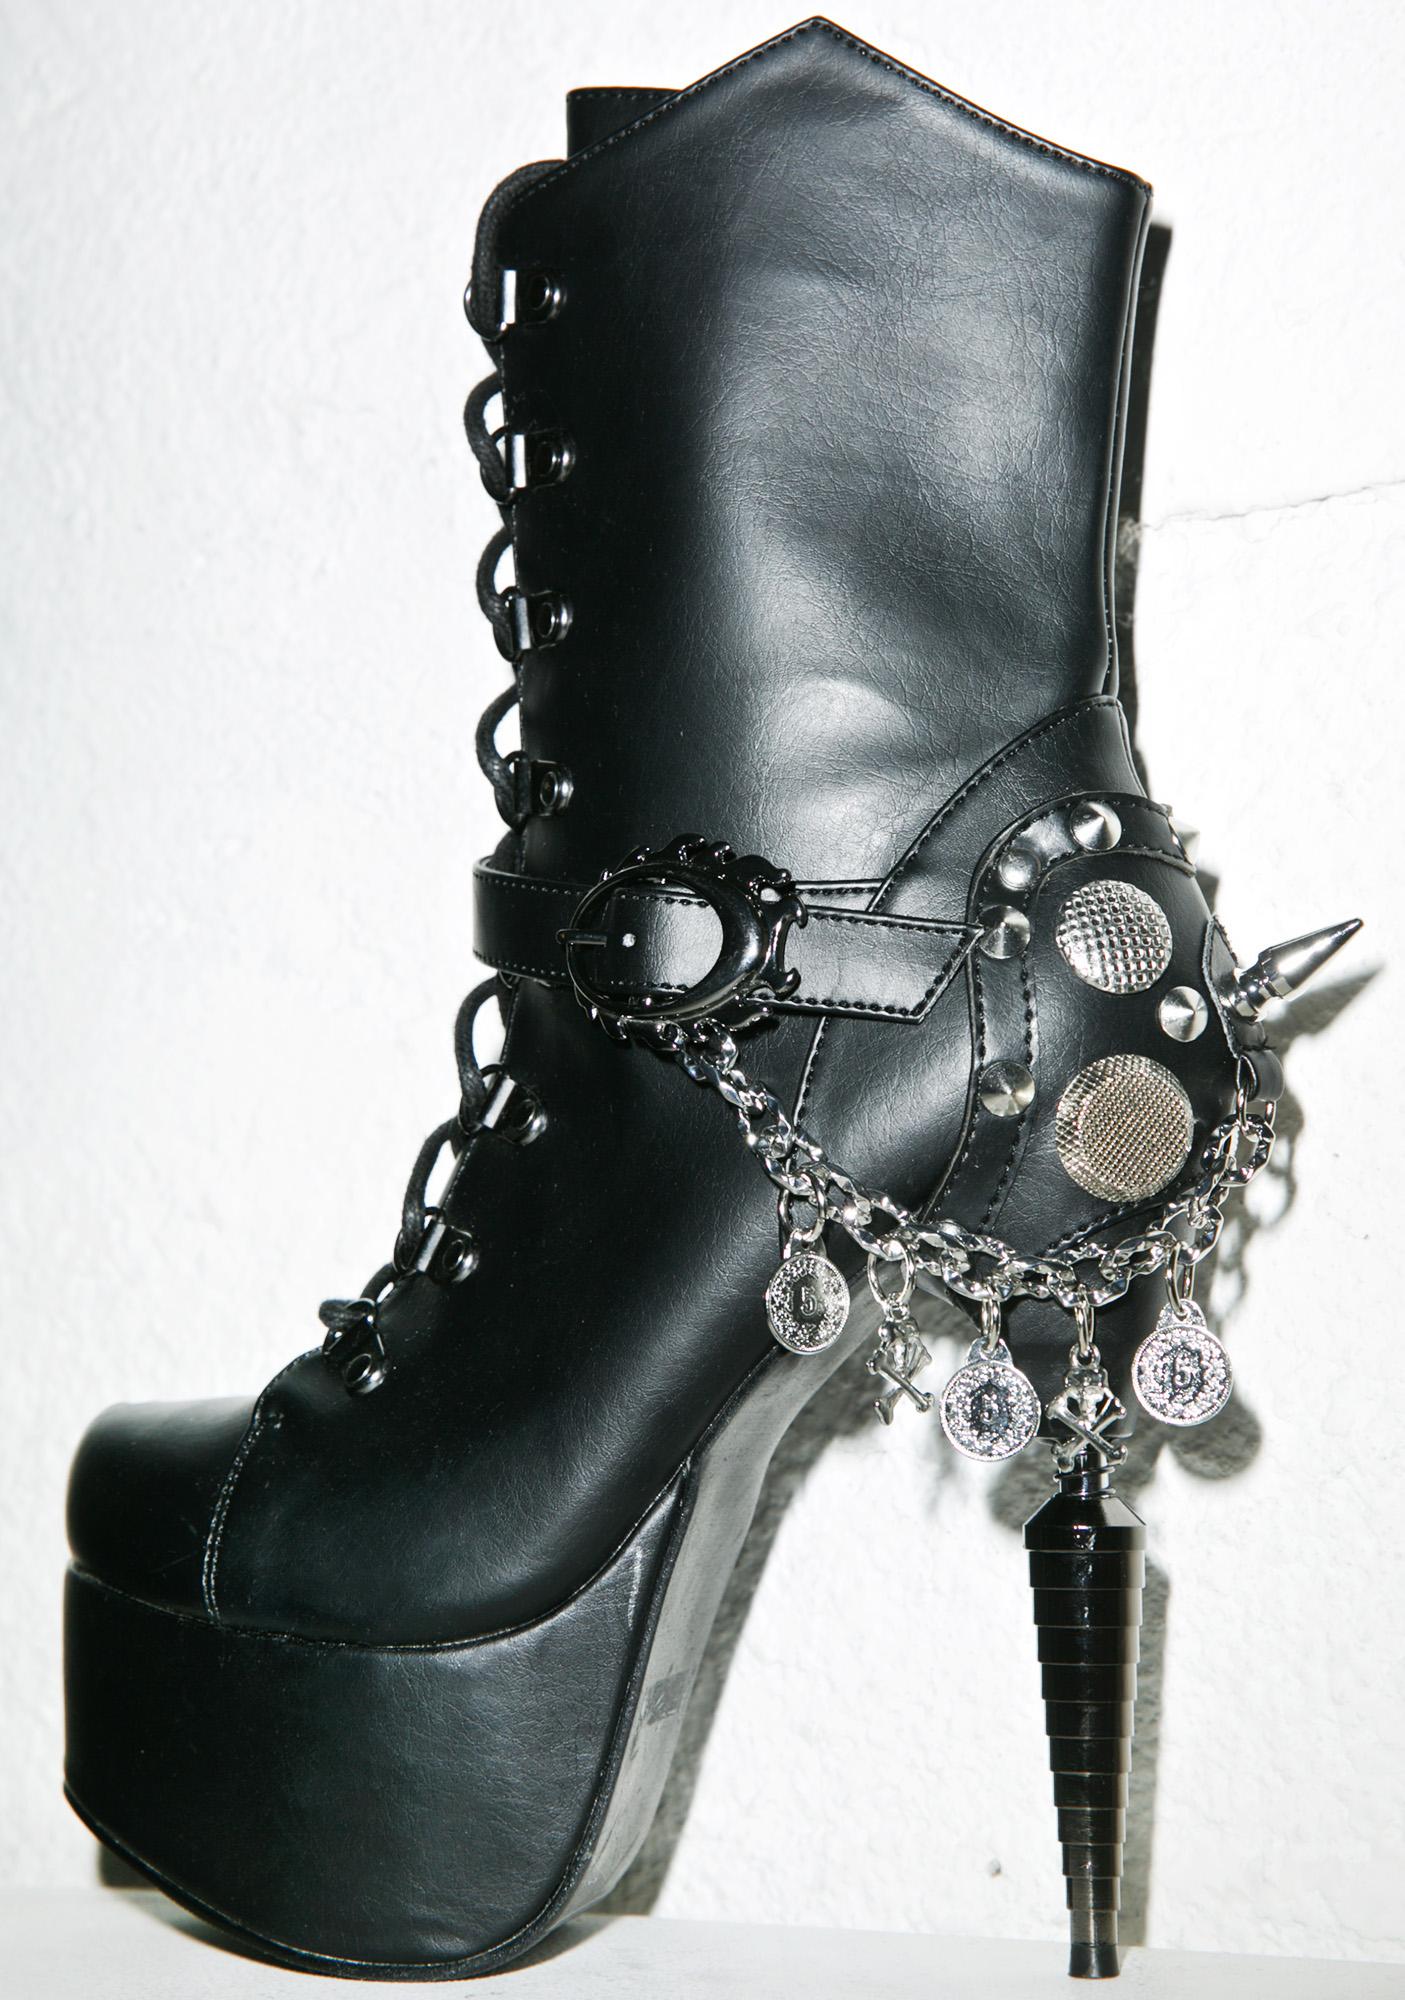 Hades Footwear Envy High Heel Boots | Dolls Kill